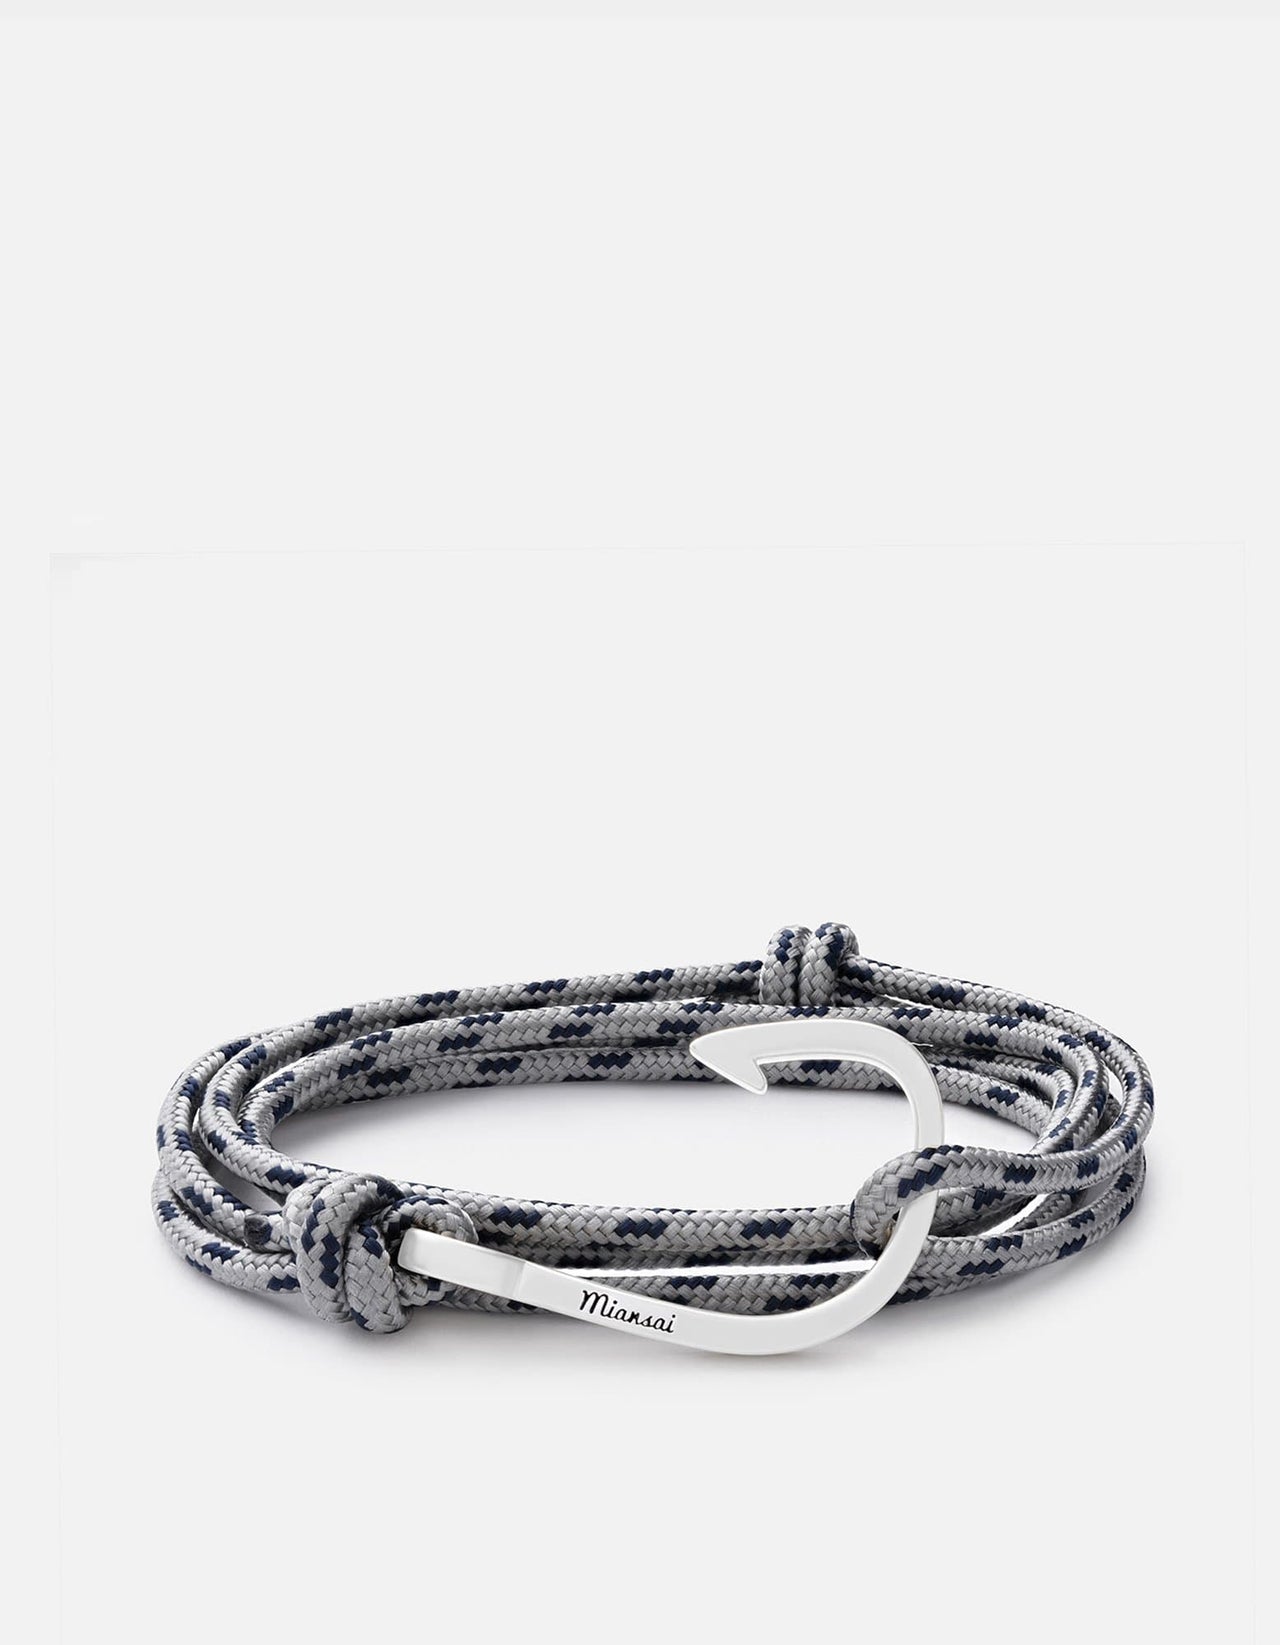 Hook on Rope Bracelet, Silver | Men's and Women's Bracelets | Miansai